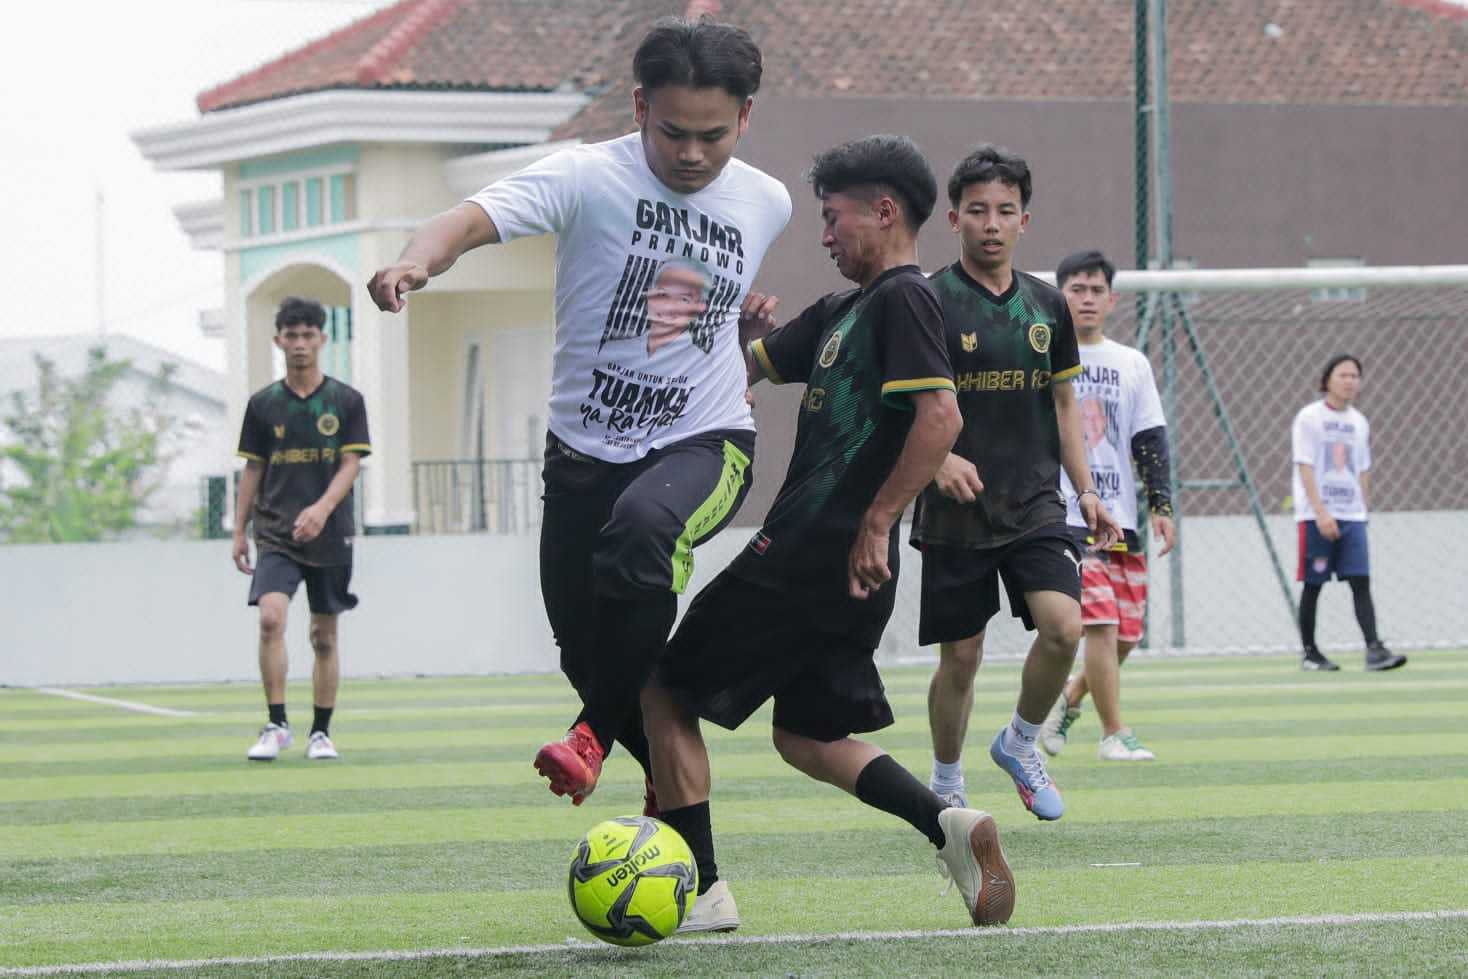 Gelorakan Pola Hidup Sehat, Ganjar Muda Padjajaran Inisiatori Turnamen Mini Soccer di Sukabumi